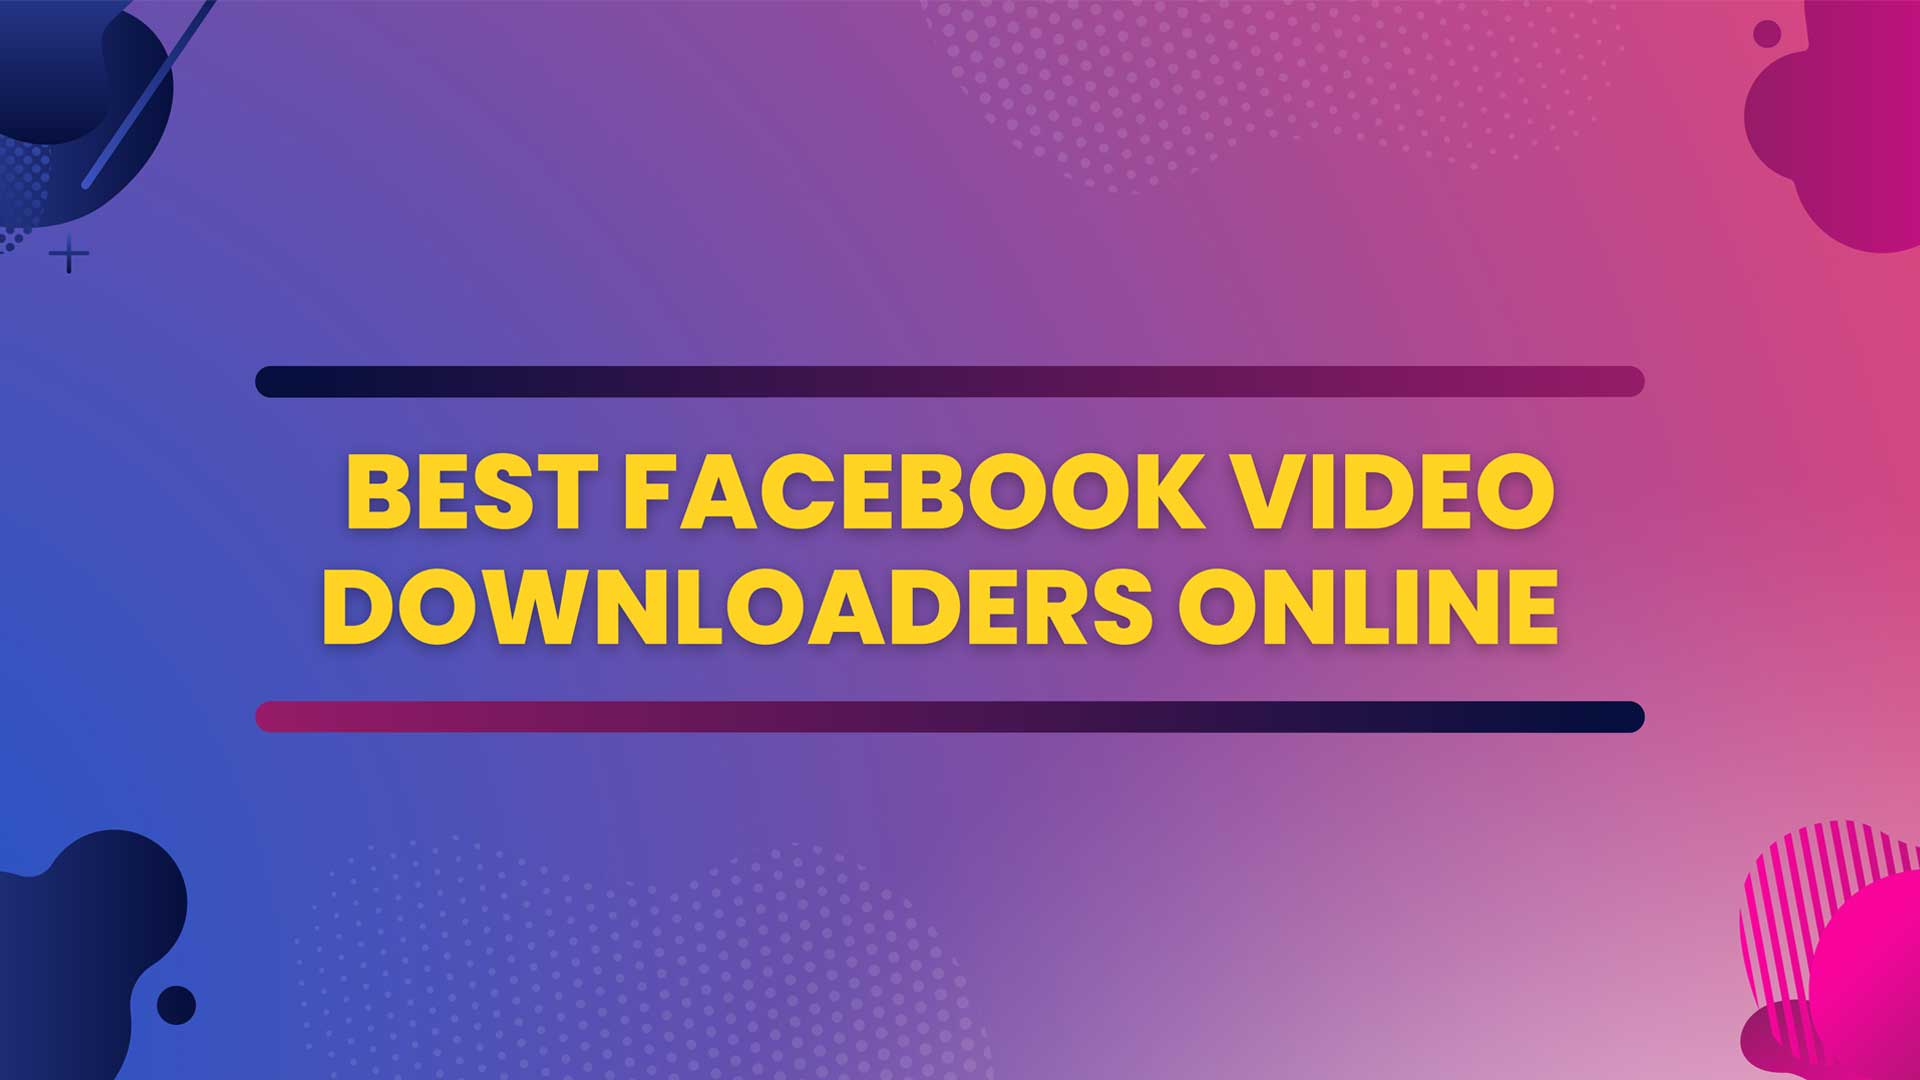 Best Facebook Video Downloader Online